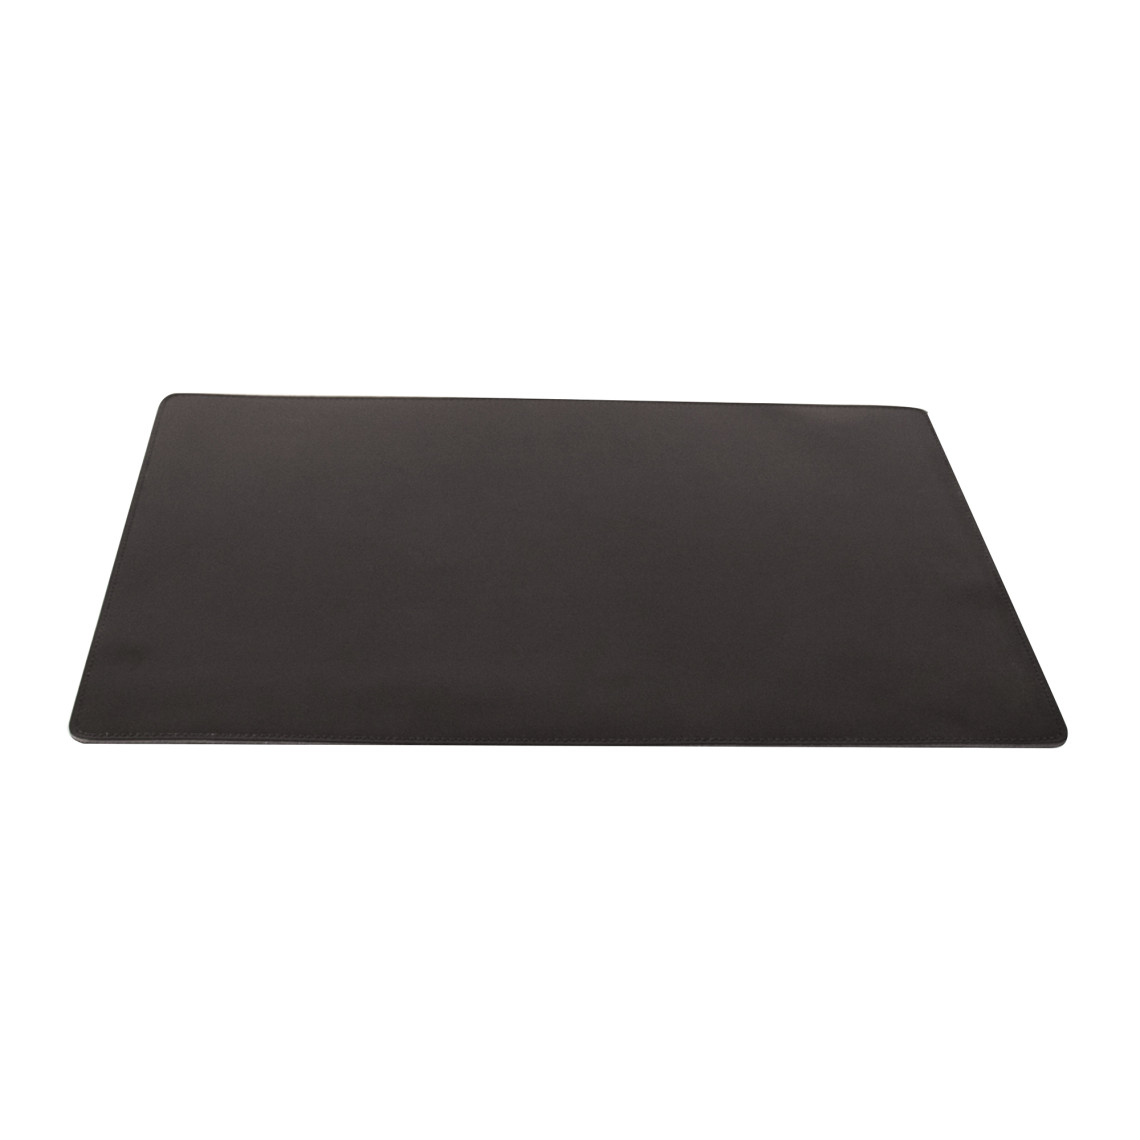 Skrivebordsunderlag i læder, Farve Sort, Størrelse L60 x B40 cm